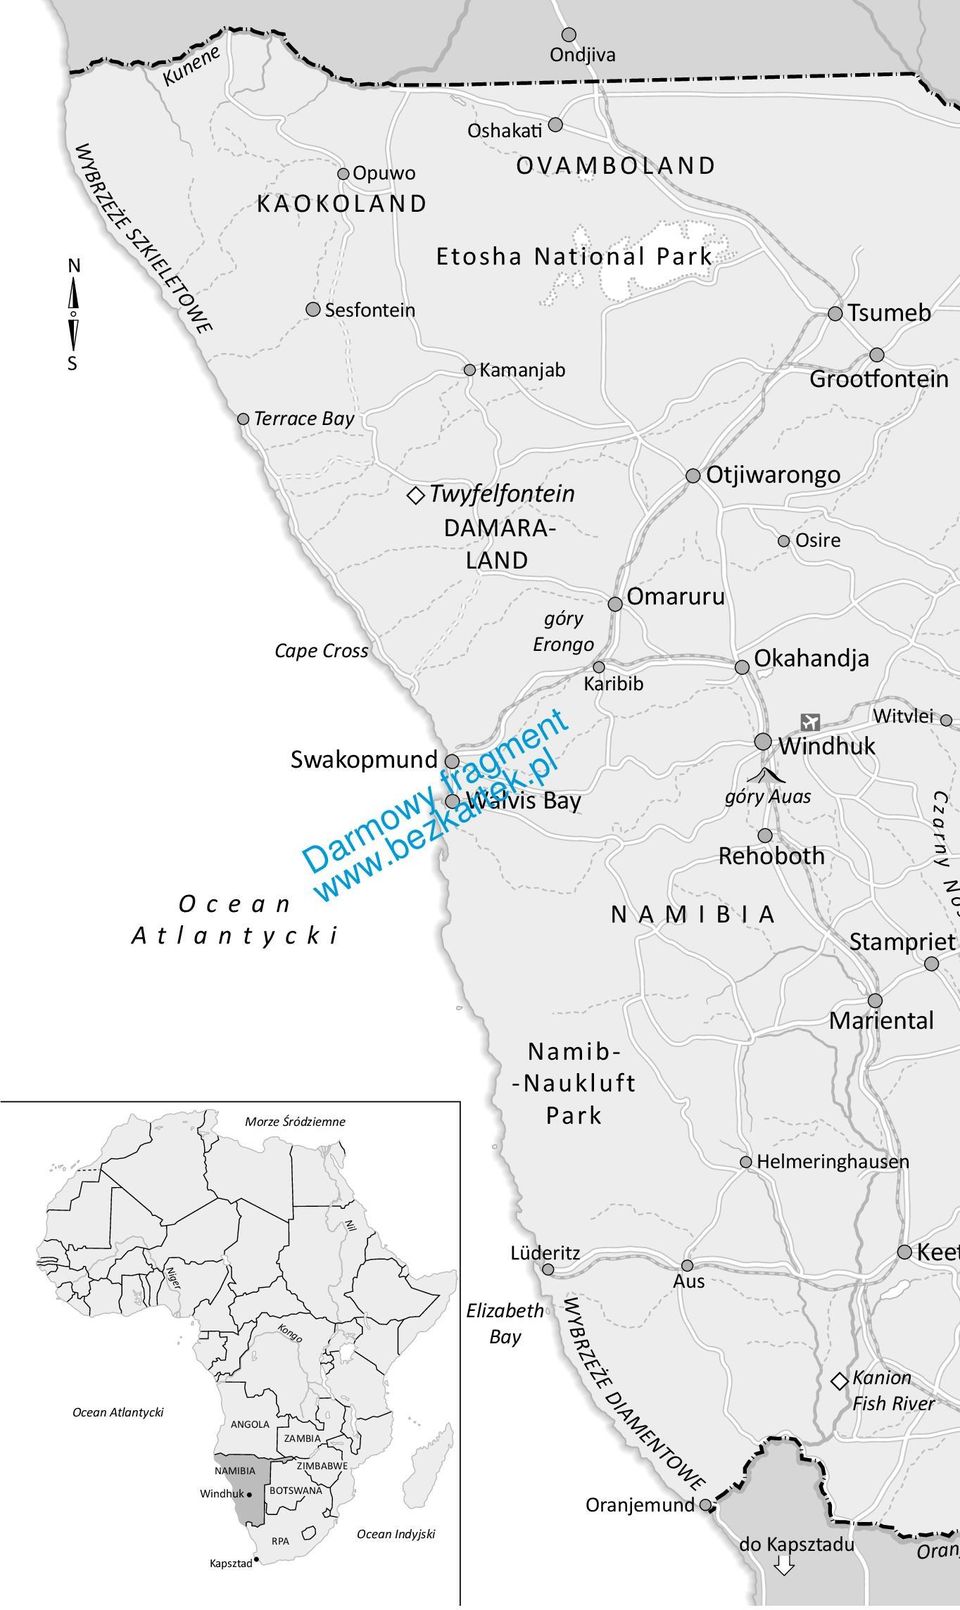 Rehoboth NAMIBIA C z a r n y N o s Stampriet Morze Śródziemne Namib- -Naukluft Park Mariental Helmeringhausen Niger Kongo Elizabeth Bay Lüderitz Aus Keet